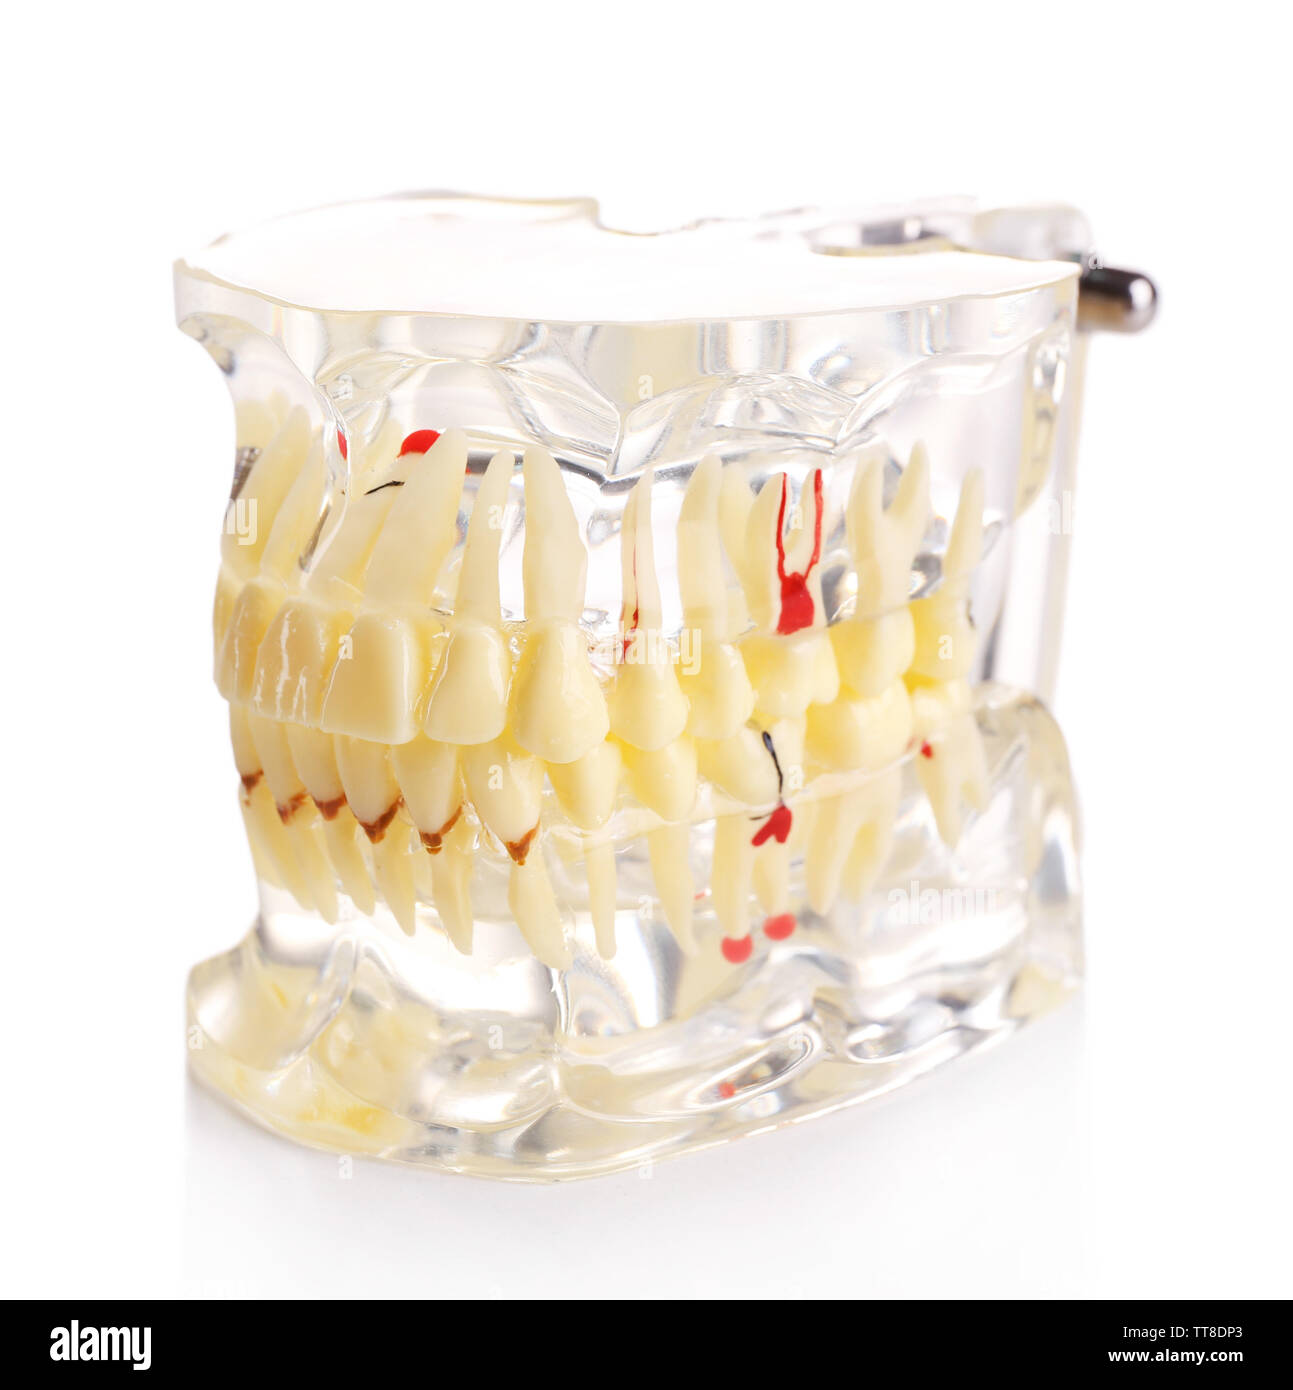 Plastica denti umani modelli isolato su bianco Foto Stock